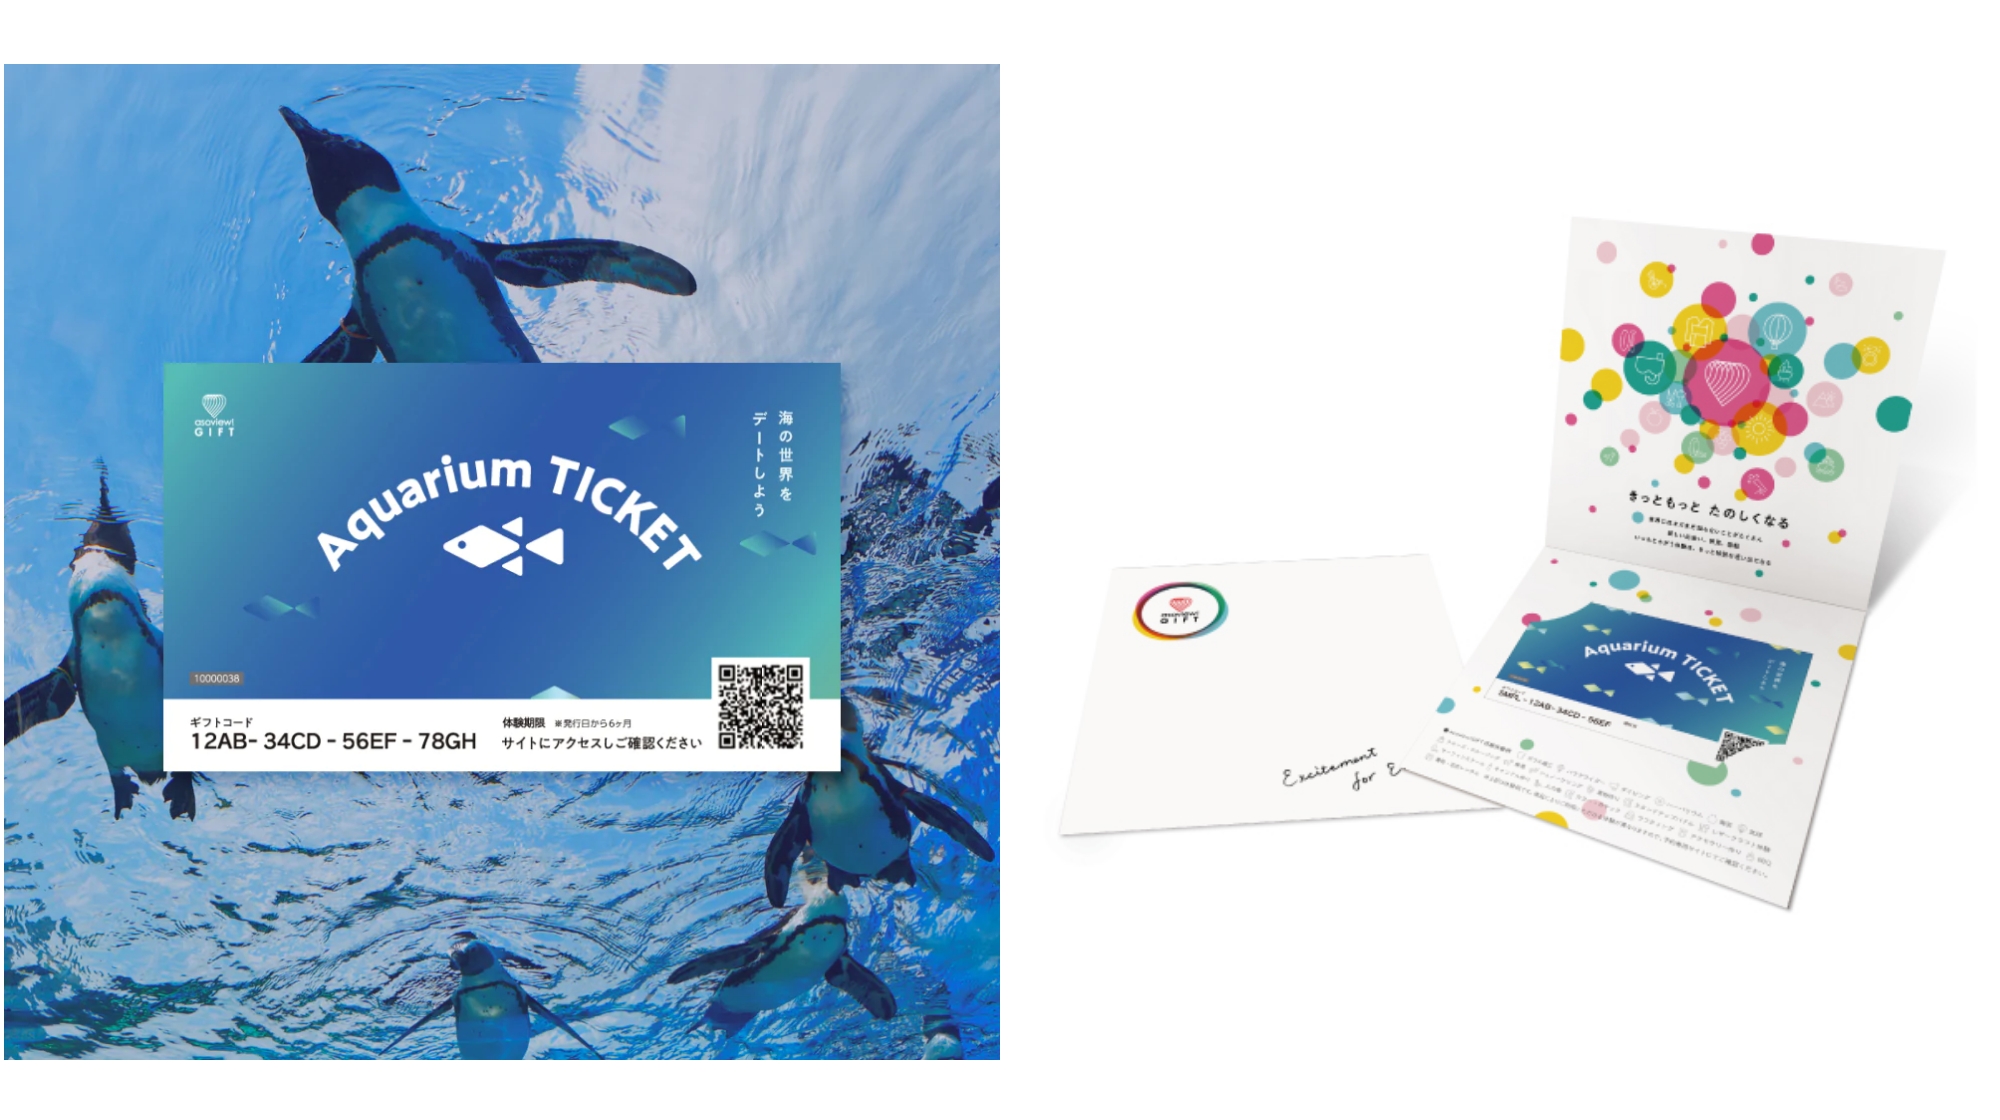 2月のご購入者様向けプレゼントは、Aquarium TICKET（ペアチケット）を抽選で3名様に！